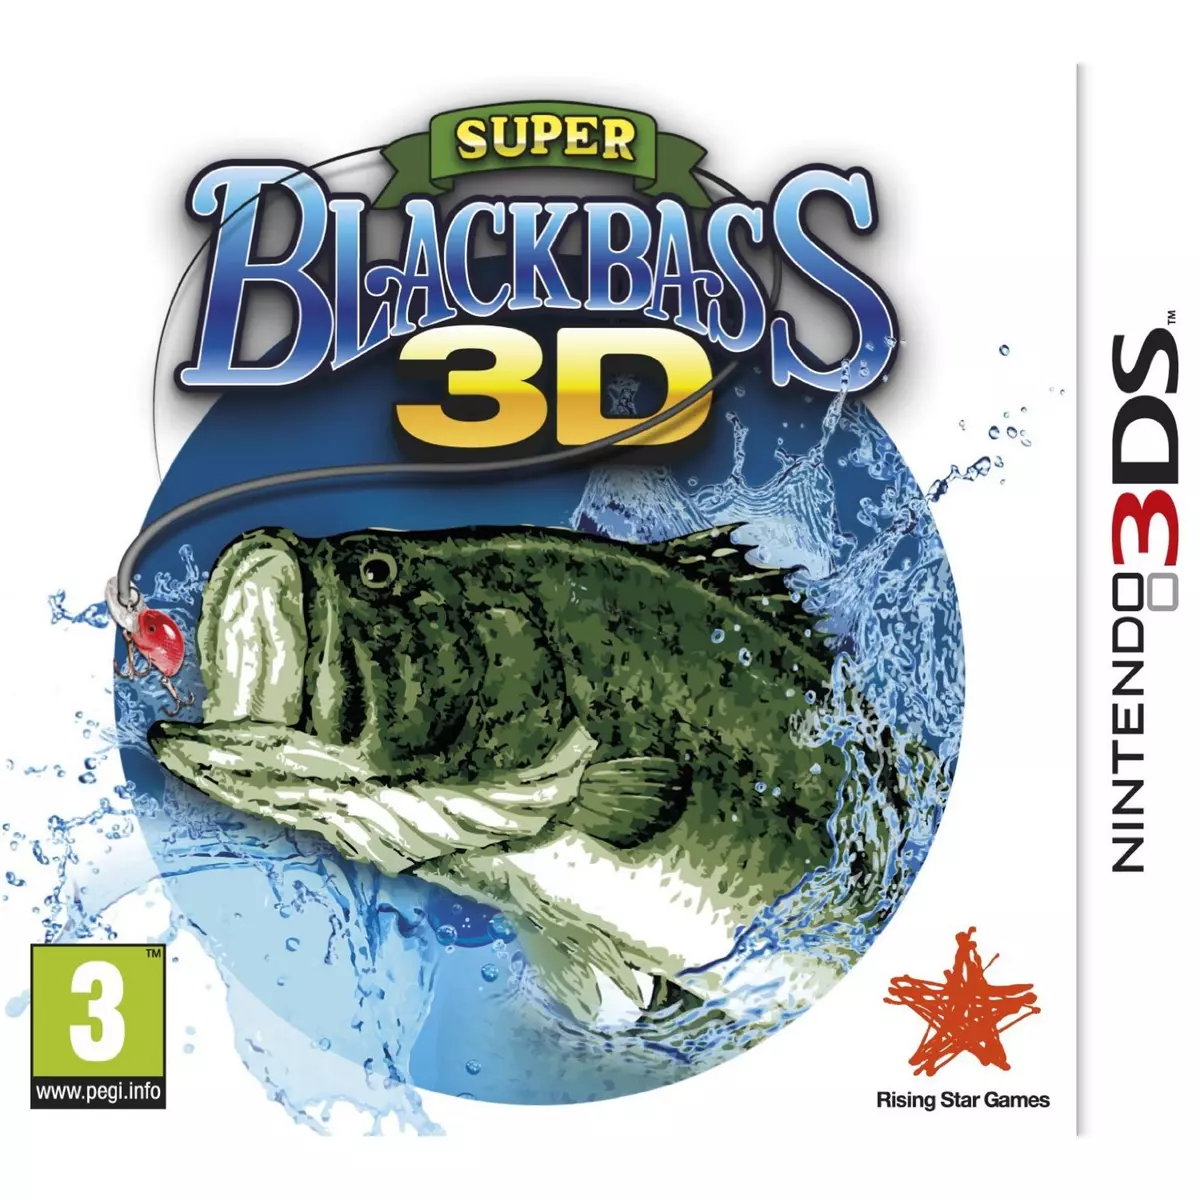 Super Blackbass 3DS